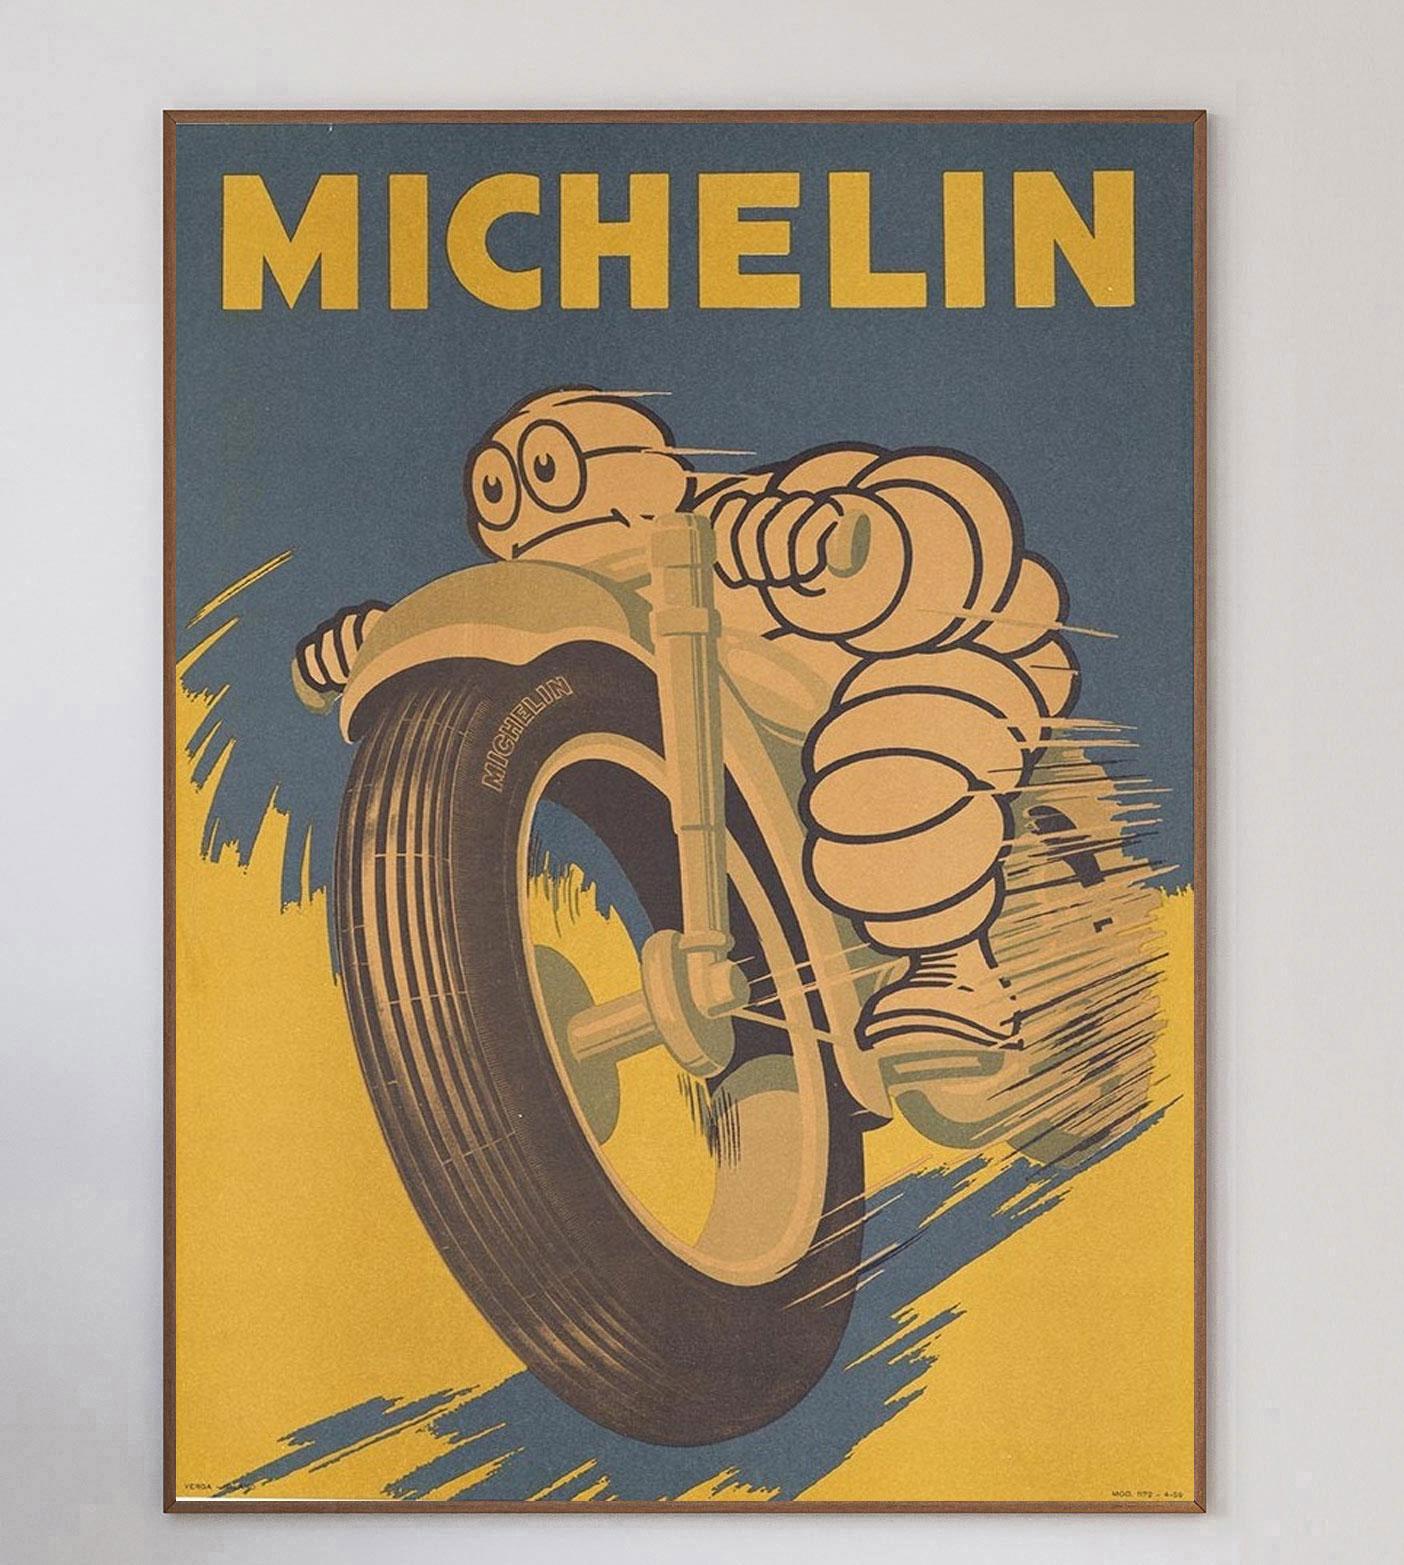 Dieses wunderbare, von Verga Printers Milano gedruckte Werbeplakat für Michelin-Reifen stammt aus dem Jahr 1959 und zeigt das Michelin-Maskottchen Bibendum alias das Michelin-Männchen auf einem Motorrad.

Bibendum wurde 1894 von Marius Rossillon